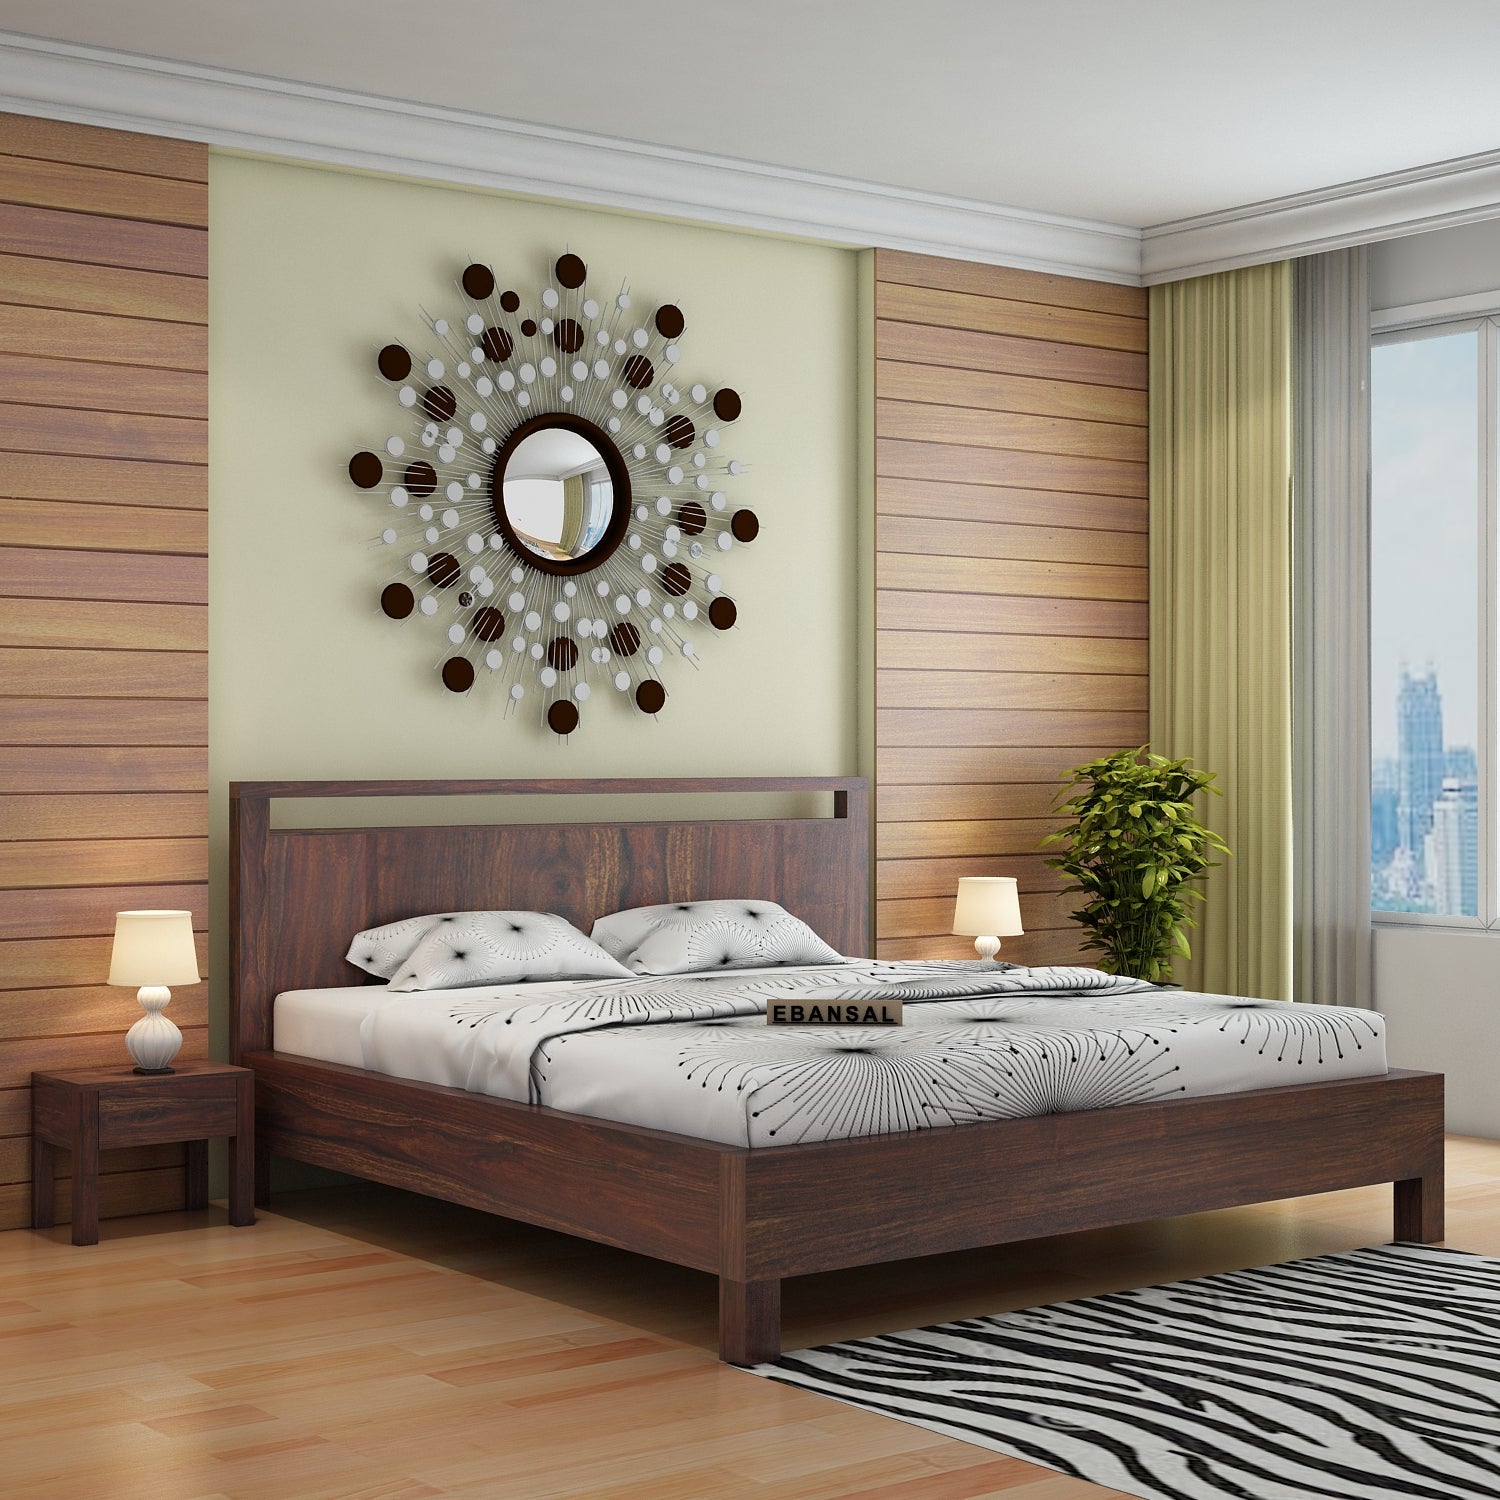 Denzaderb Solid Sheesham Wood Bed Without Storage (King Size, Walnut Finish)